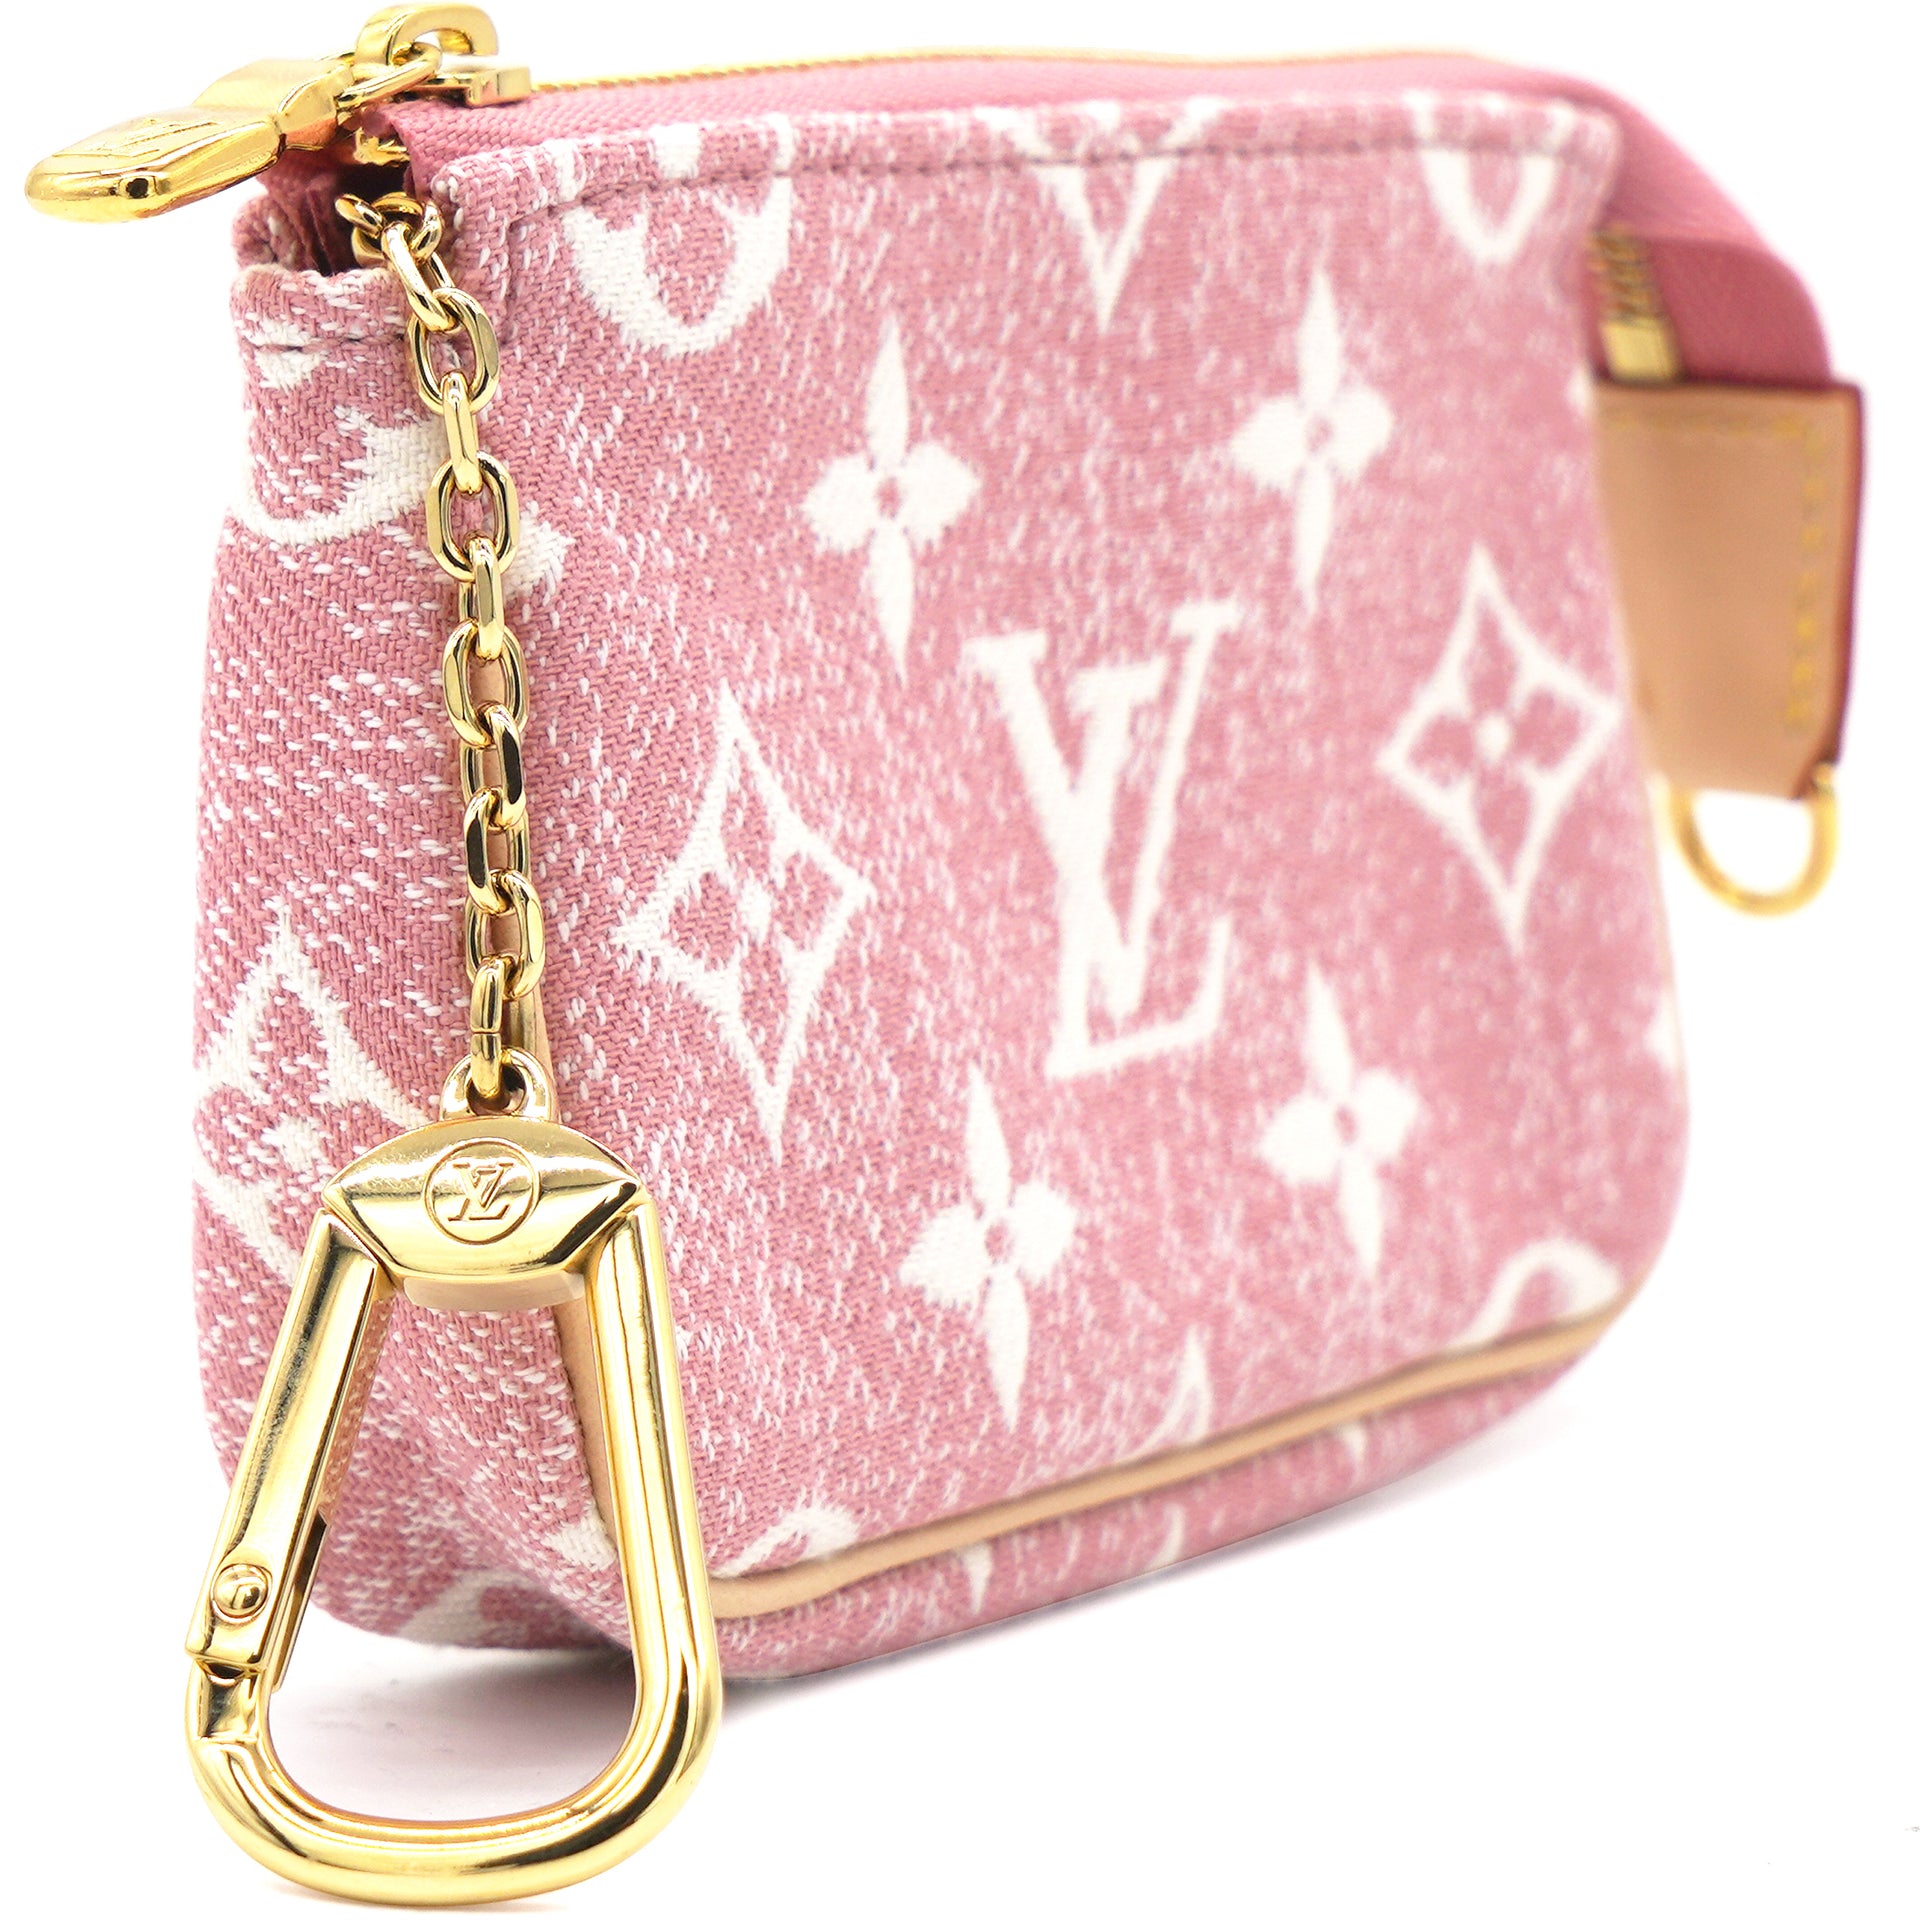 Louis Vuitton Micro Pochette Accessoires, Pink